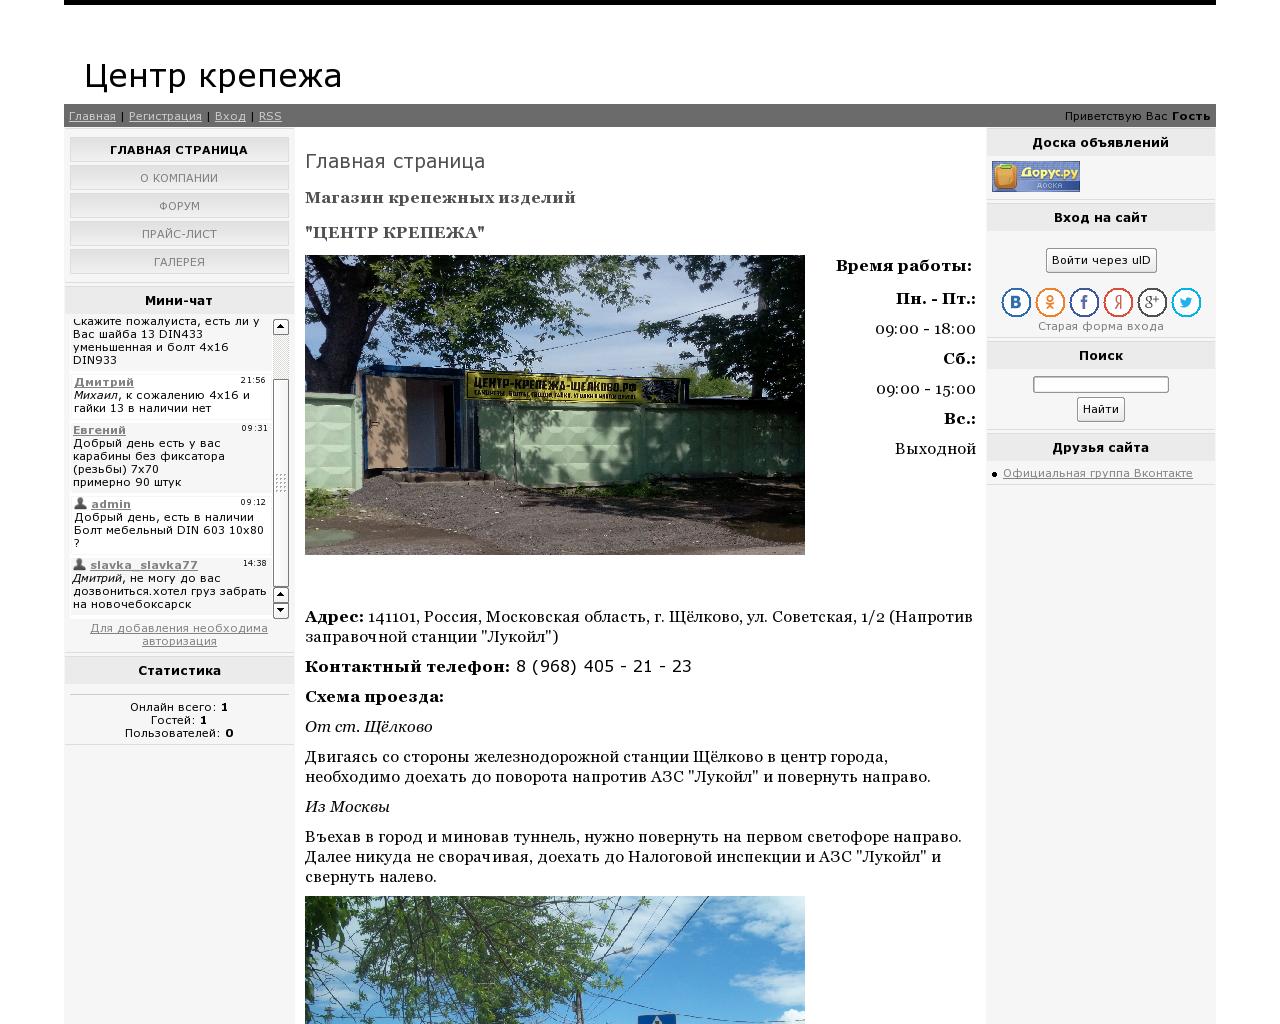 Изображение сайта 7494546.ru в разрешении 1280x1024